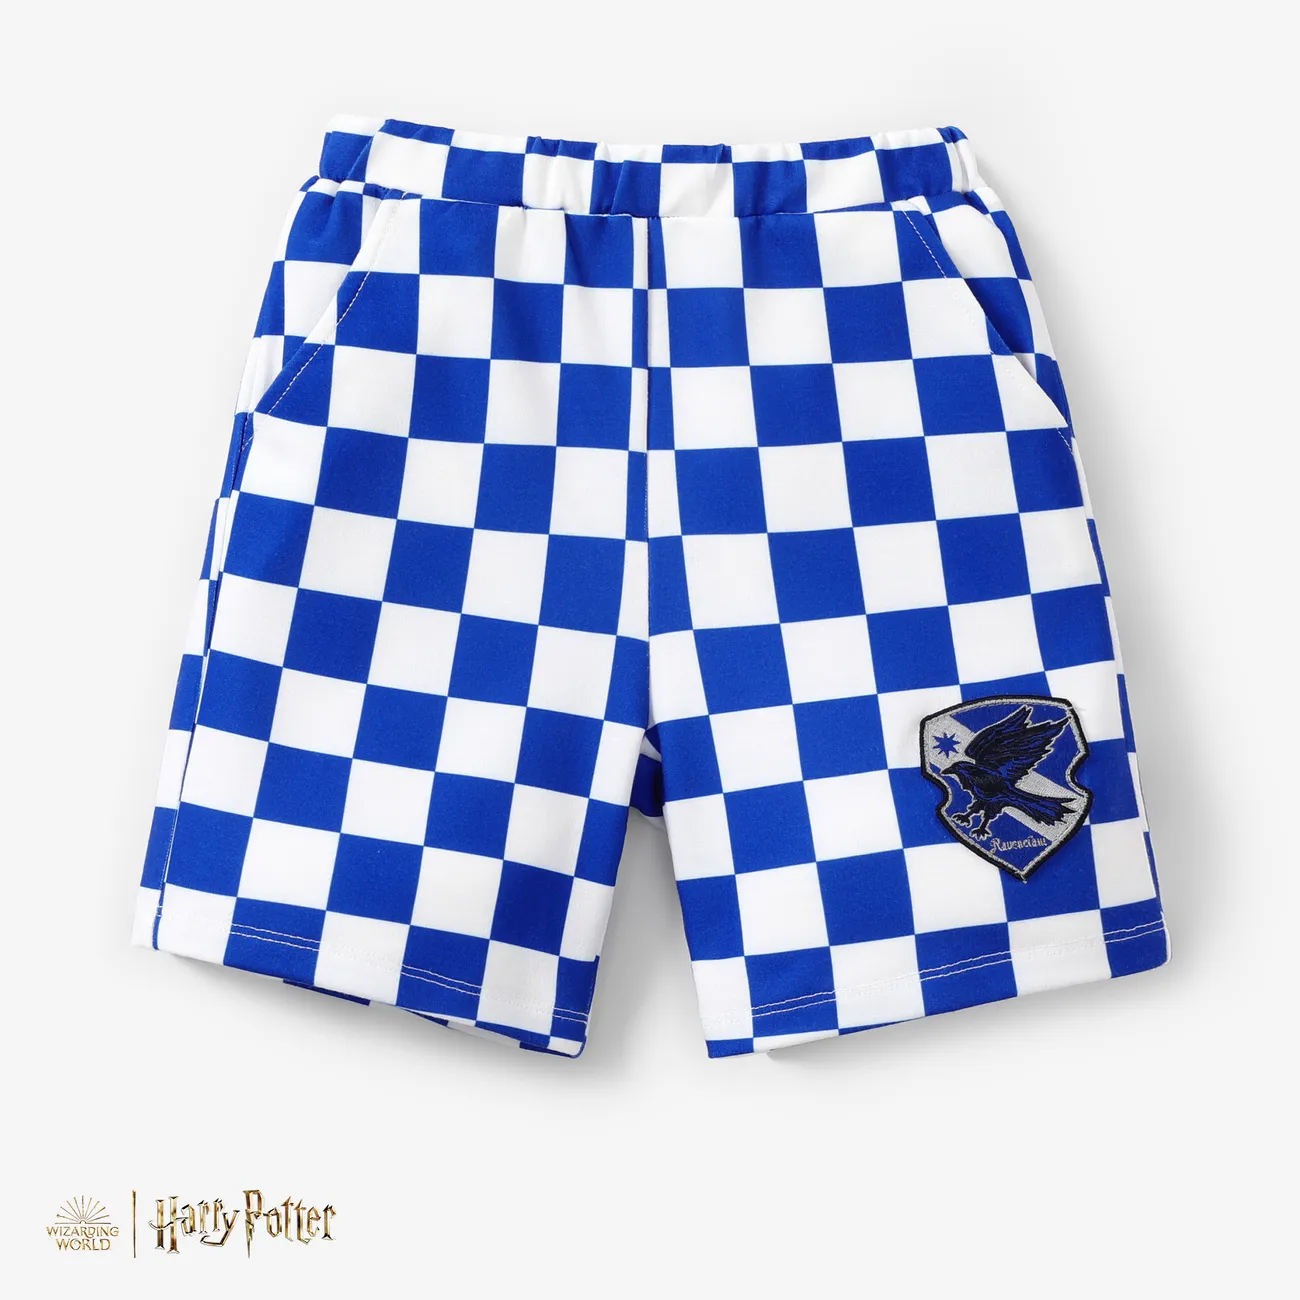 Harry Potter Kleinkind/Kid Boy 1pc Schach Gittermuster Preppy Stil Poloshirt oder Shorts
 Blau Weiss big image 1